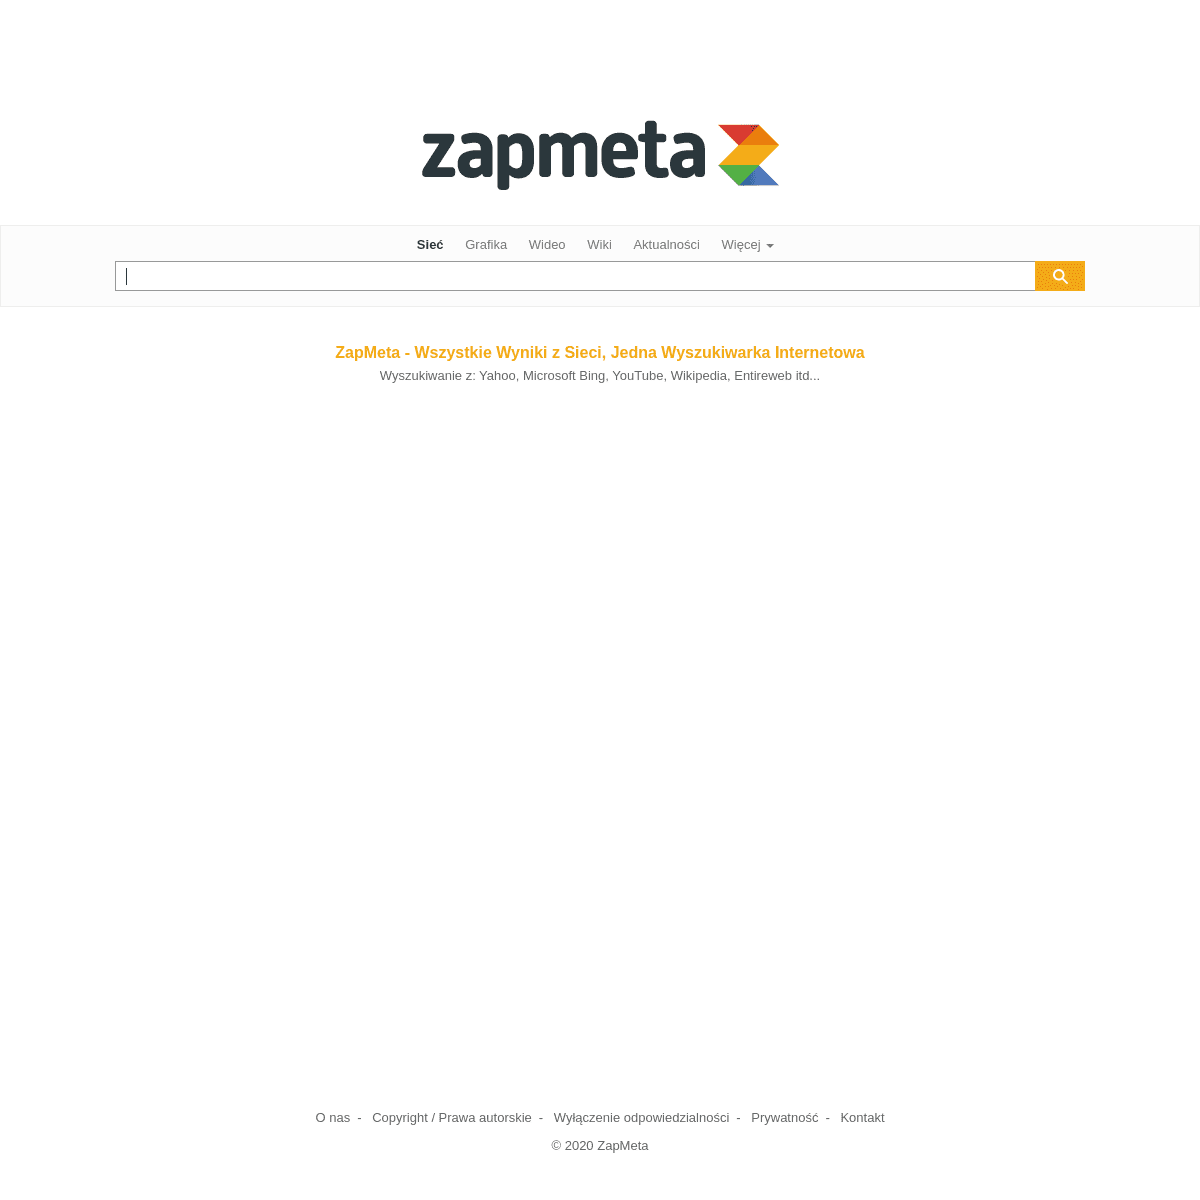 A complete backup of zapmeta.com.pl